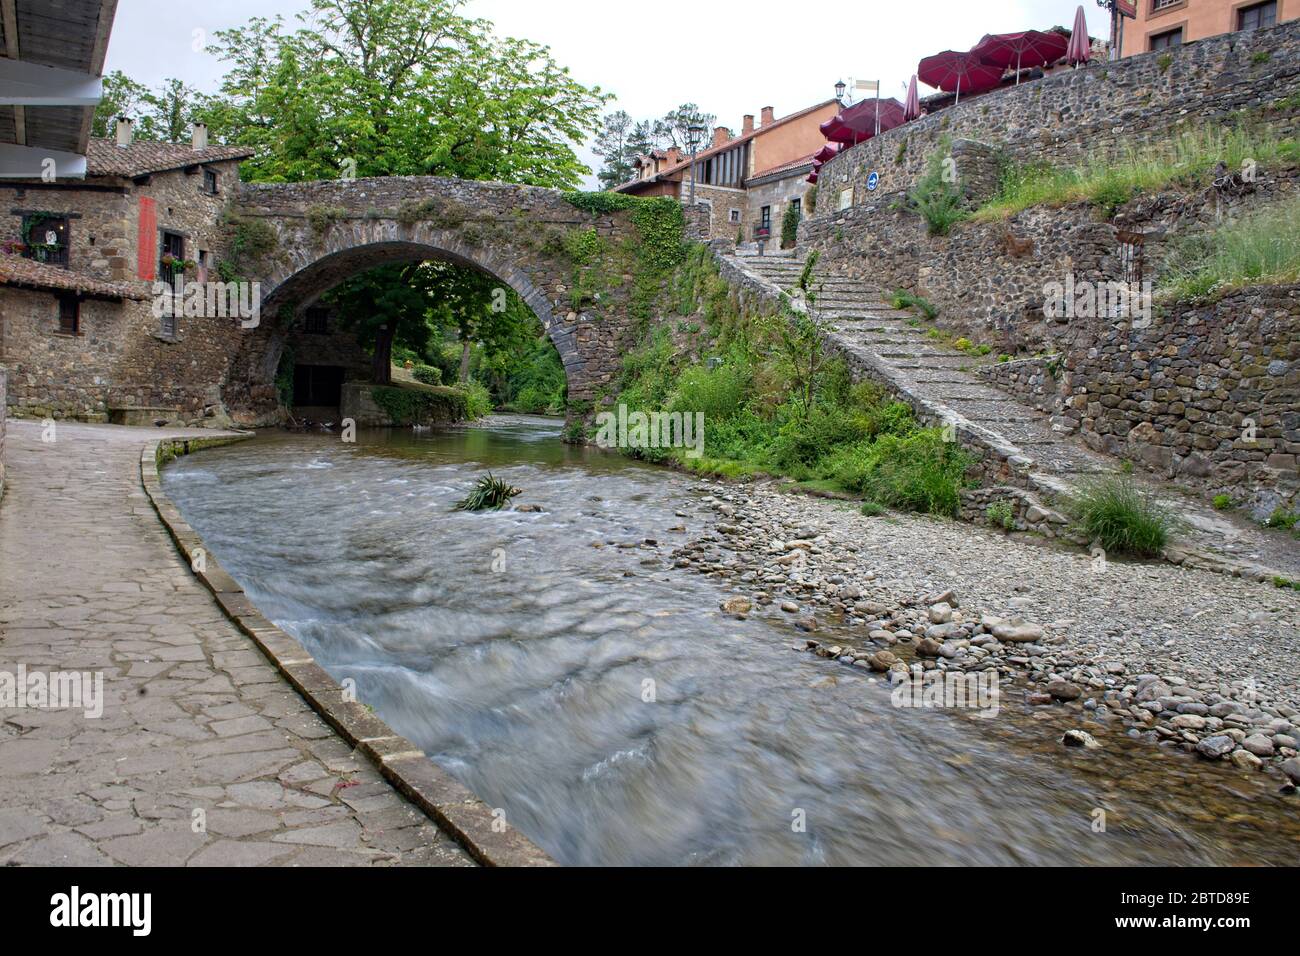 La rivière Quiviesa coule sous un ancien pont en pierre à Potes, Cantabrie, Espagne. Banque D'Images